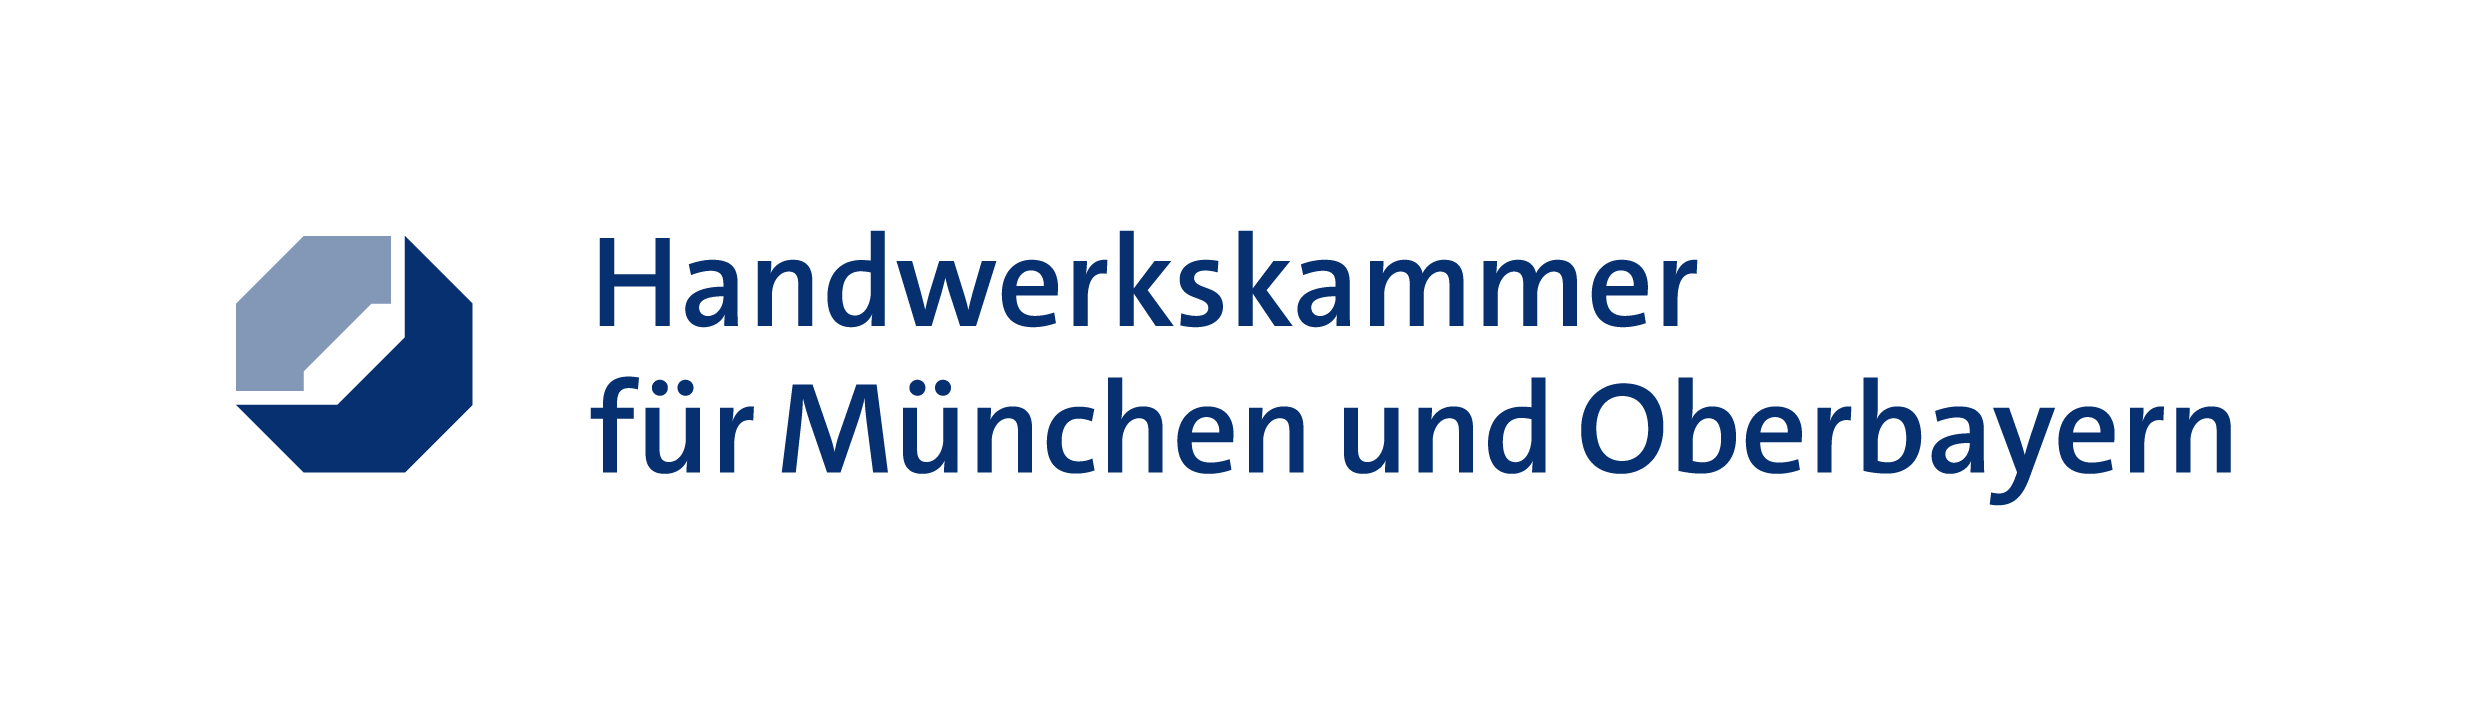 Handwerkskammer München - Reinigungsfirma Dein Glanz